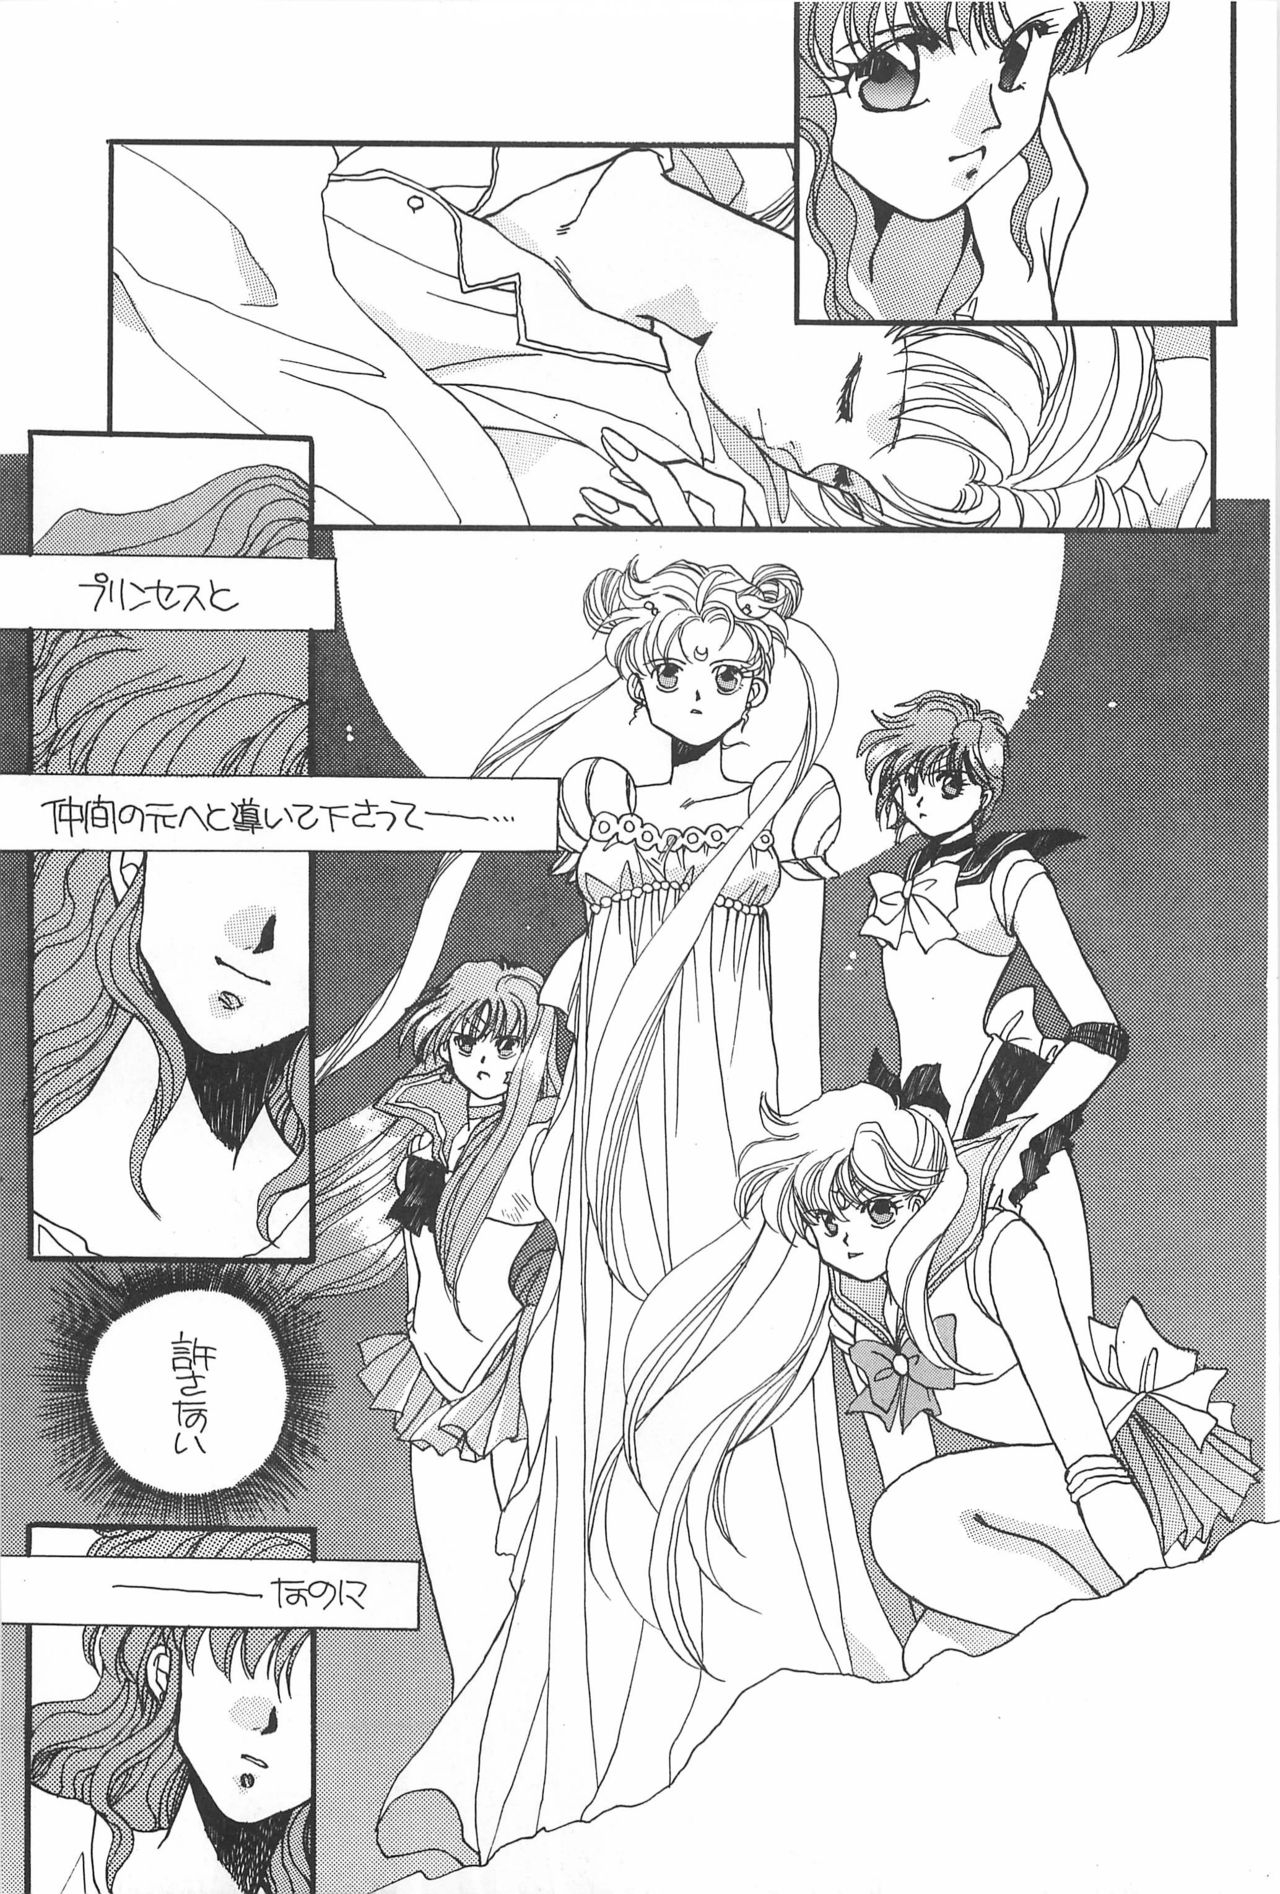 [Hello World (Muttri Moony)] Kaze no You ni Yume no You ni - Sailor Moon Collection (Sailor Moon) 164